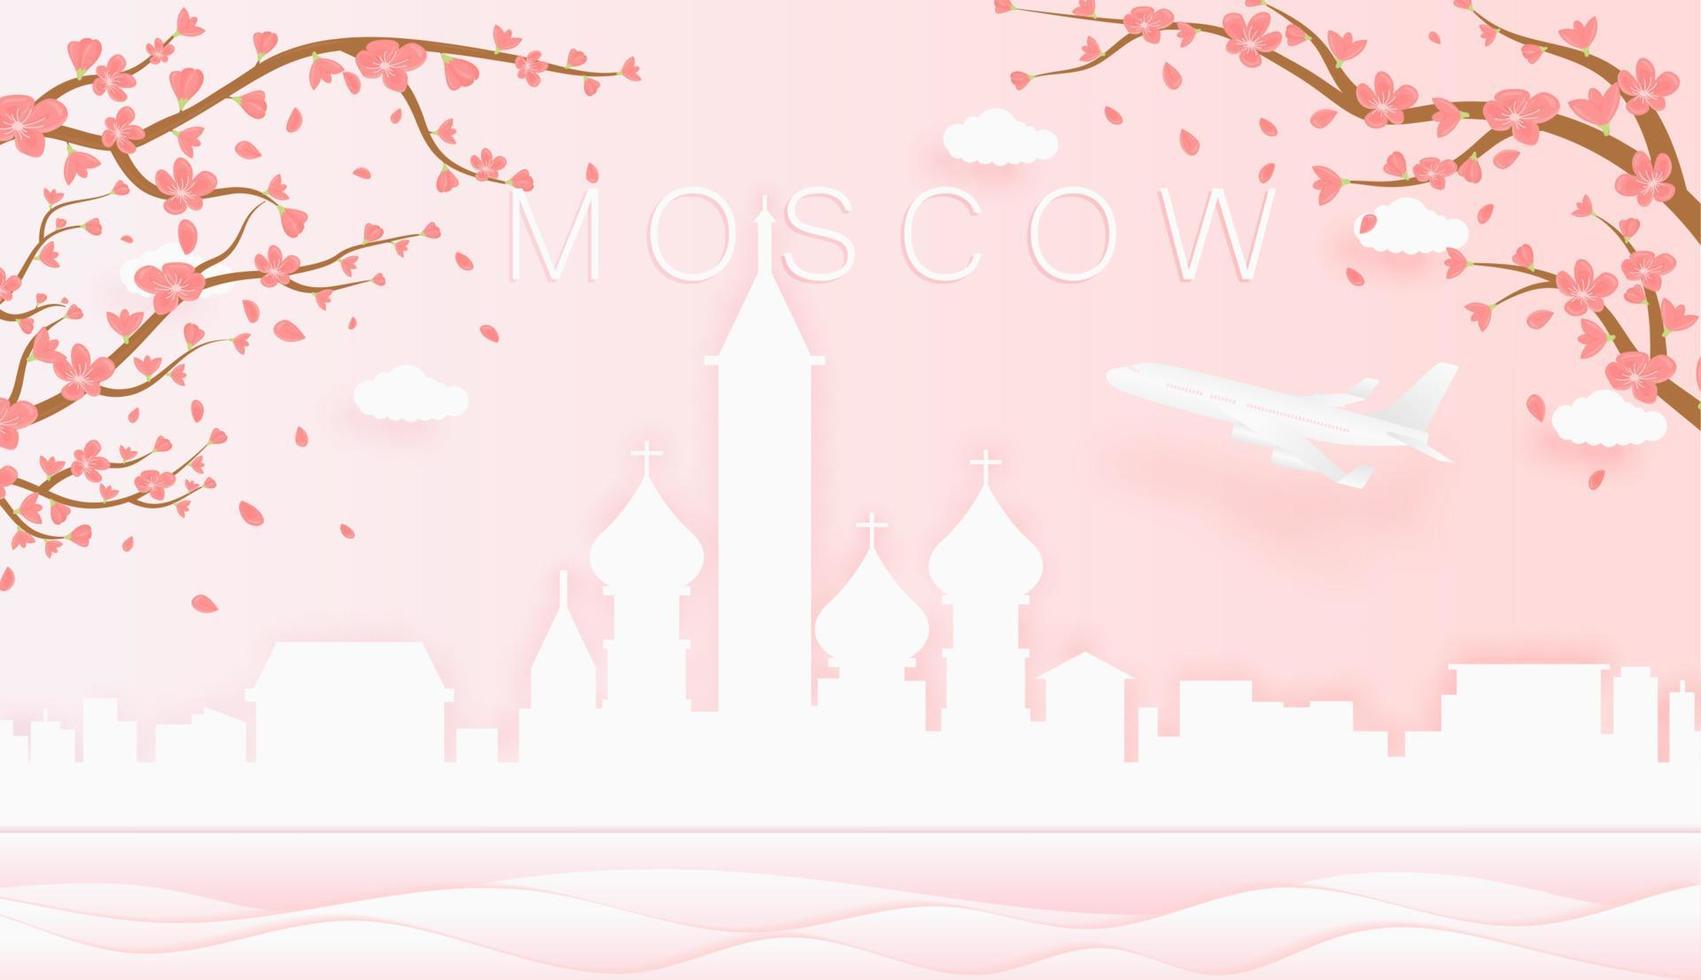 Panorama Reise Postkarte, Poster, Tour Werbung von Welt berühmt Sehenswürdigkeiten von Moskau, Frühling Jahreszeit mit Blühen Blumen im Baum vektor